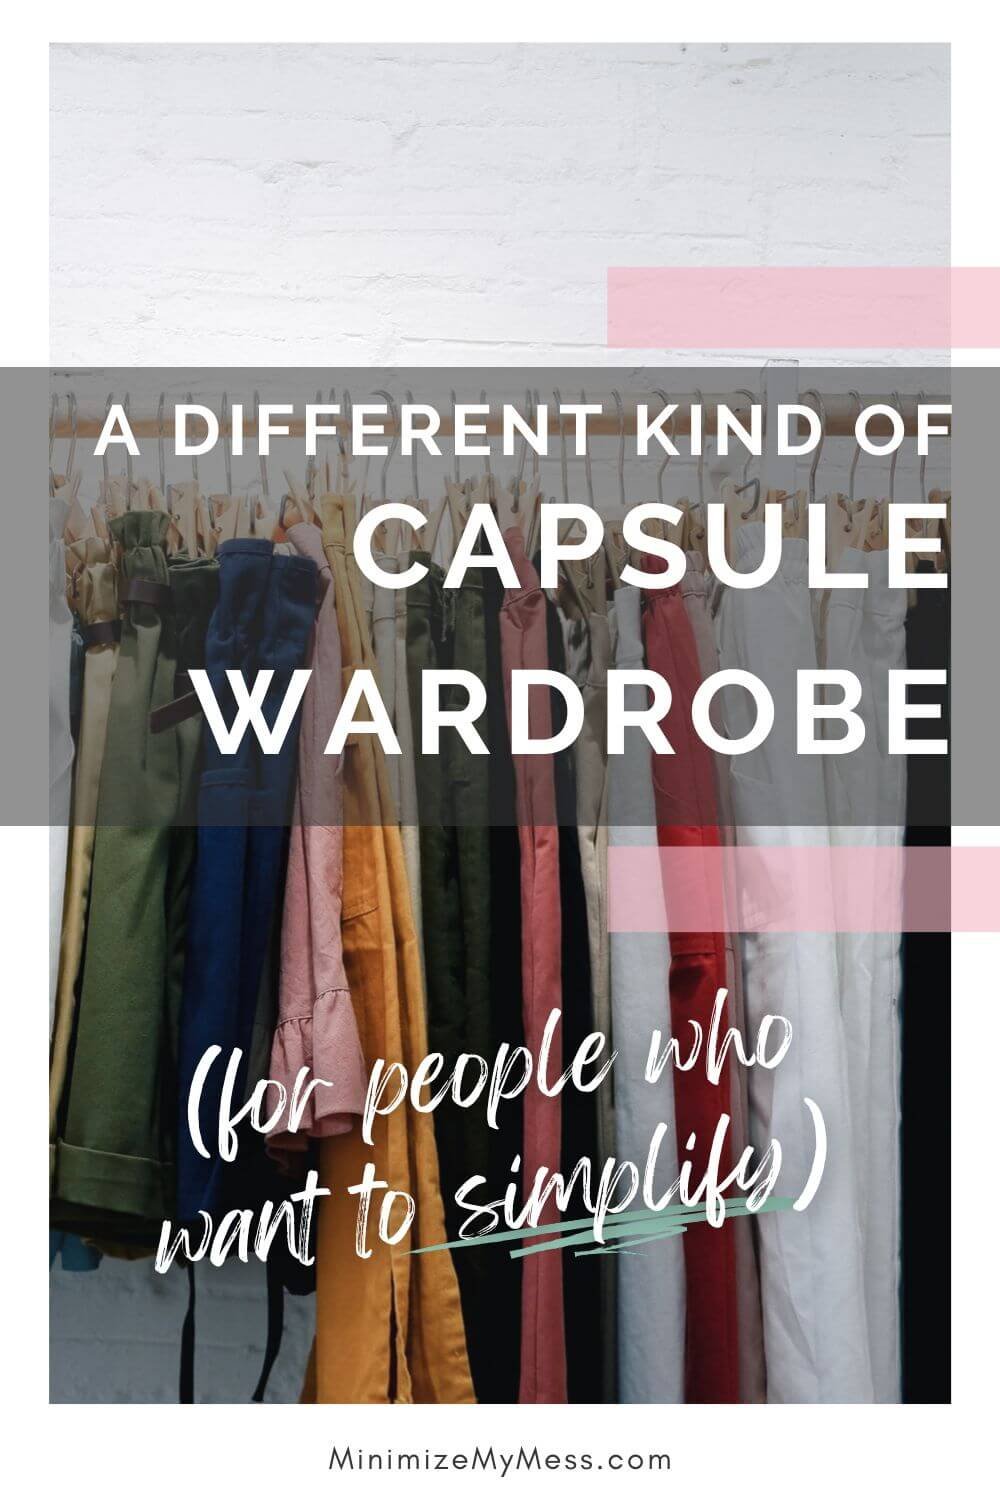 Capsule Wardrobe Checklist — VANITY STORIES